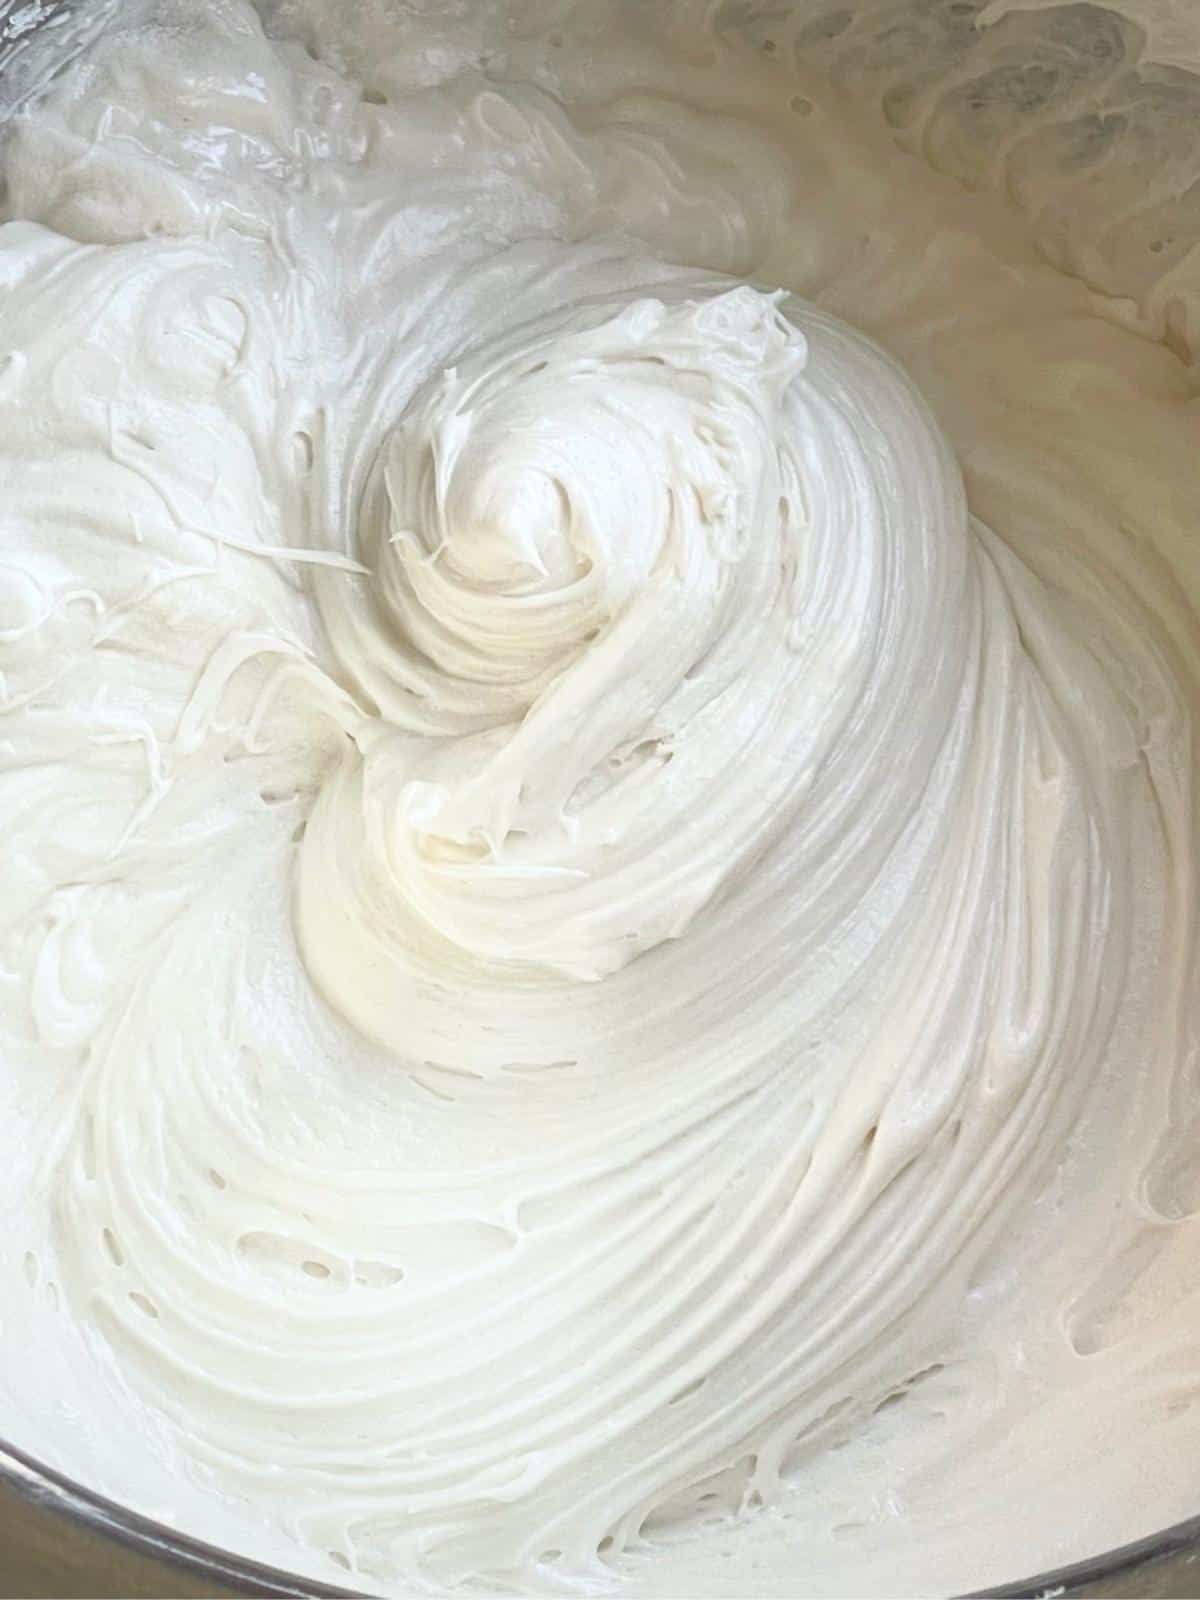 Cream cheese frosting swirl.